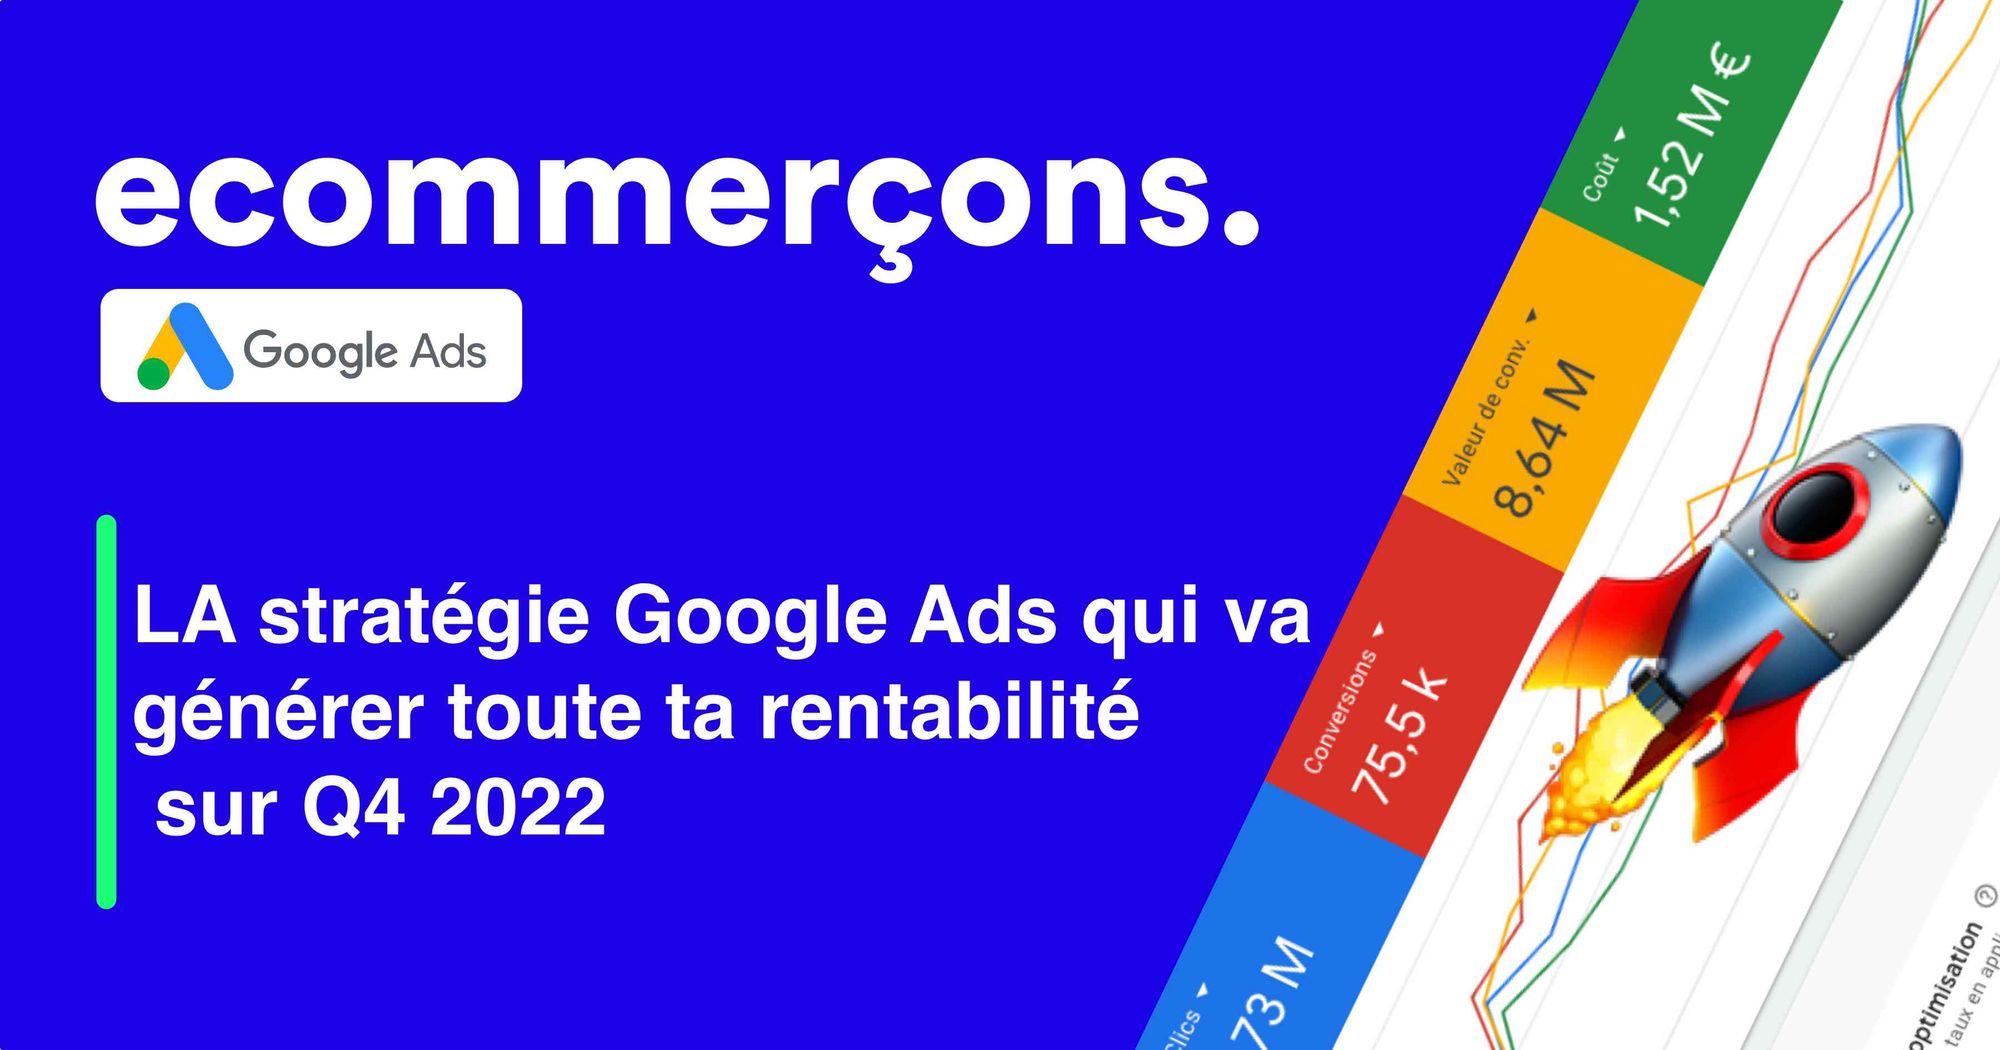 LA stratégie Google Ads qui va générer toute ta rentabilité sur Q4 2022